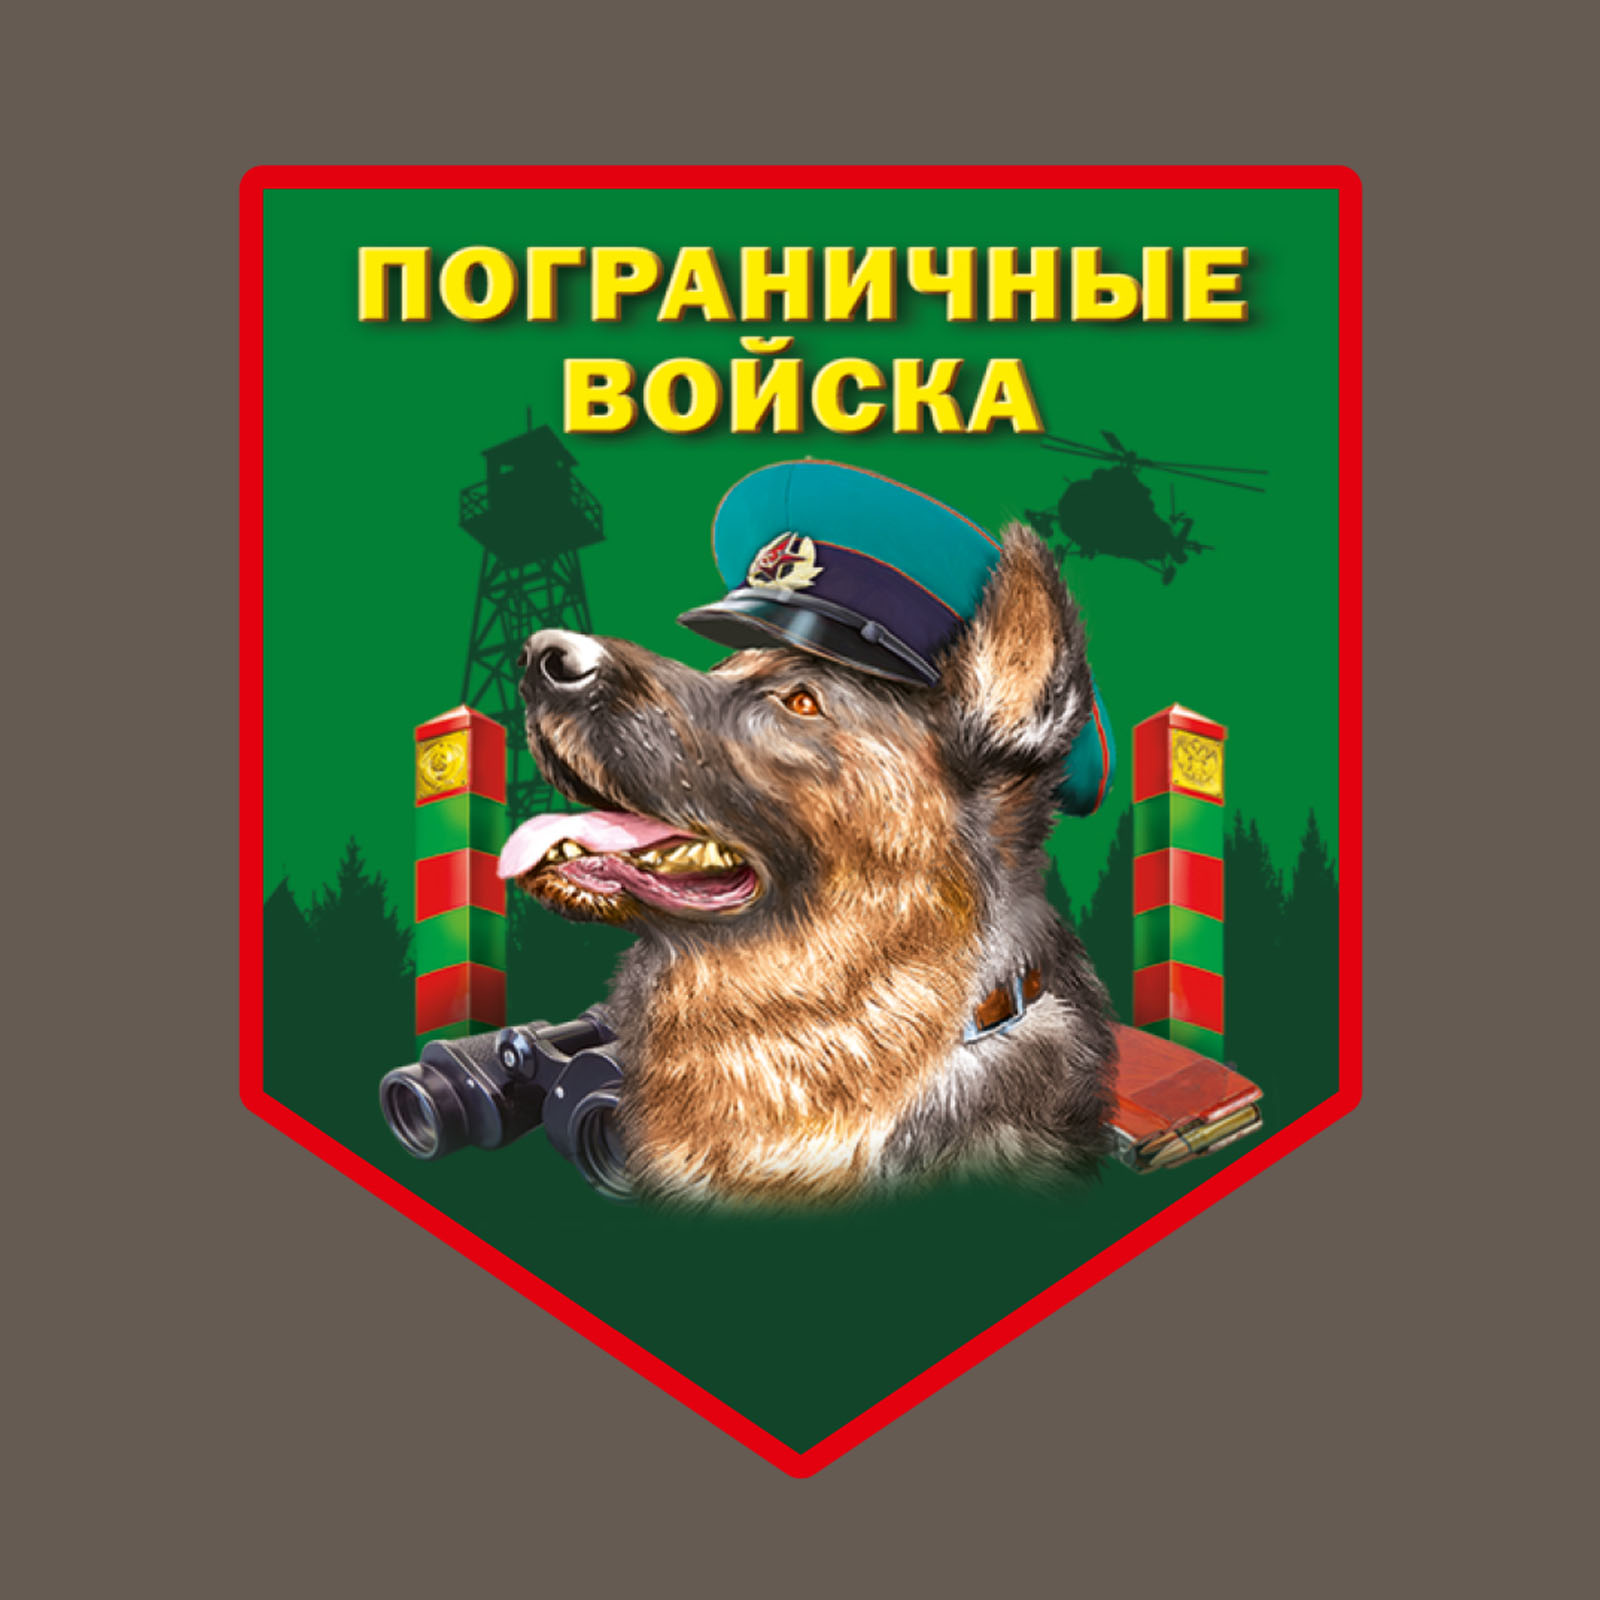 Оливковая футболка с термотрансфером "Пограничные войска" 